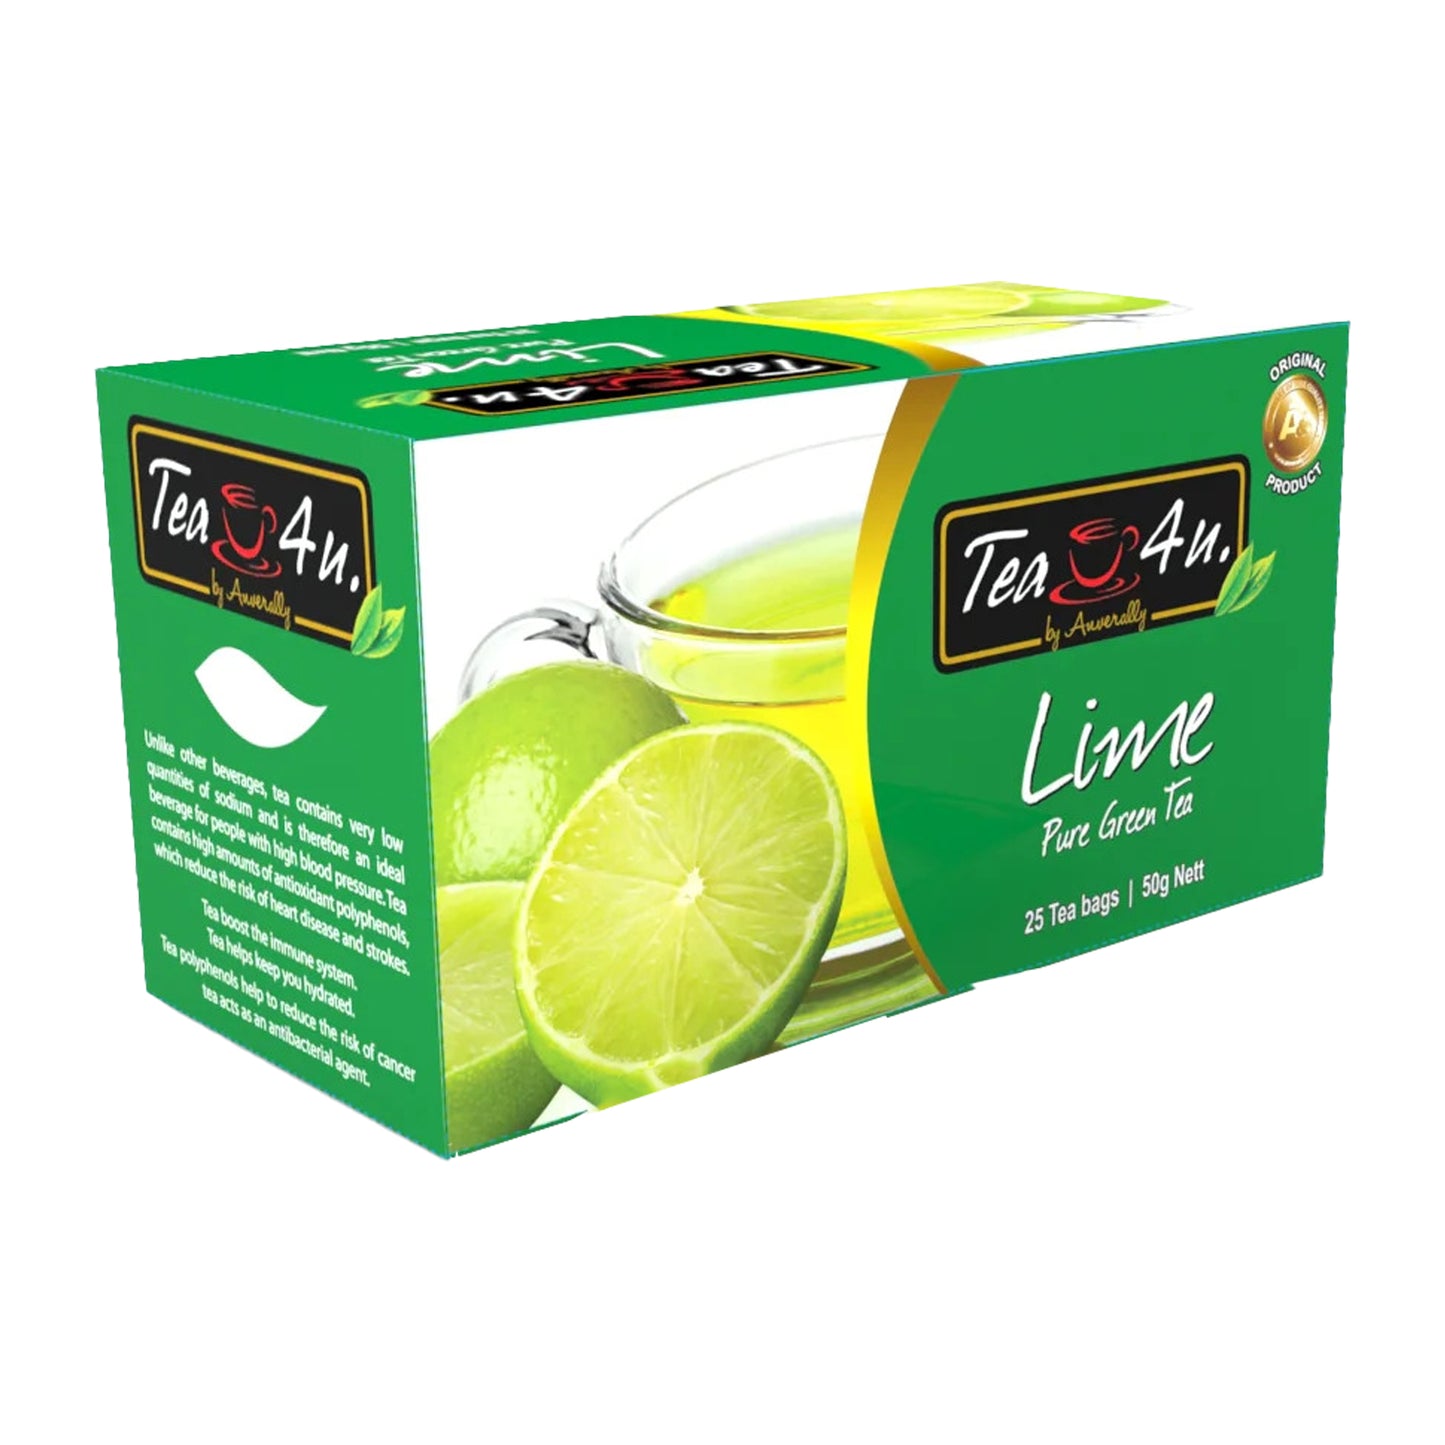 Tea4U Lime Green Tea (50g) 25 Tea Bags